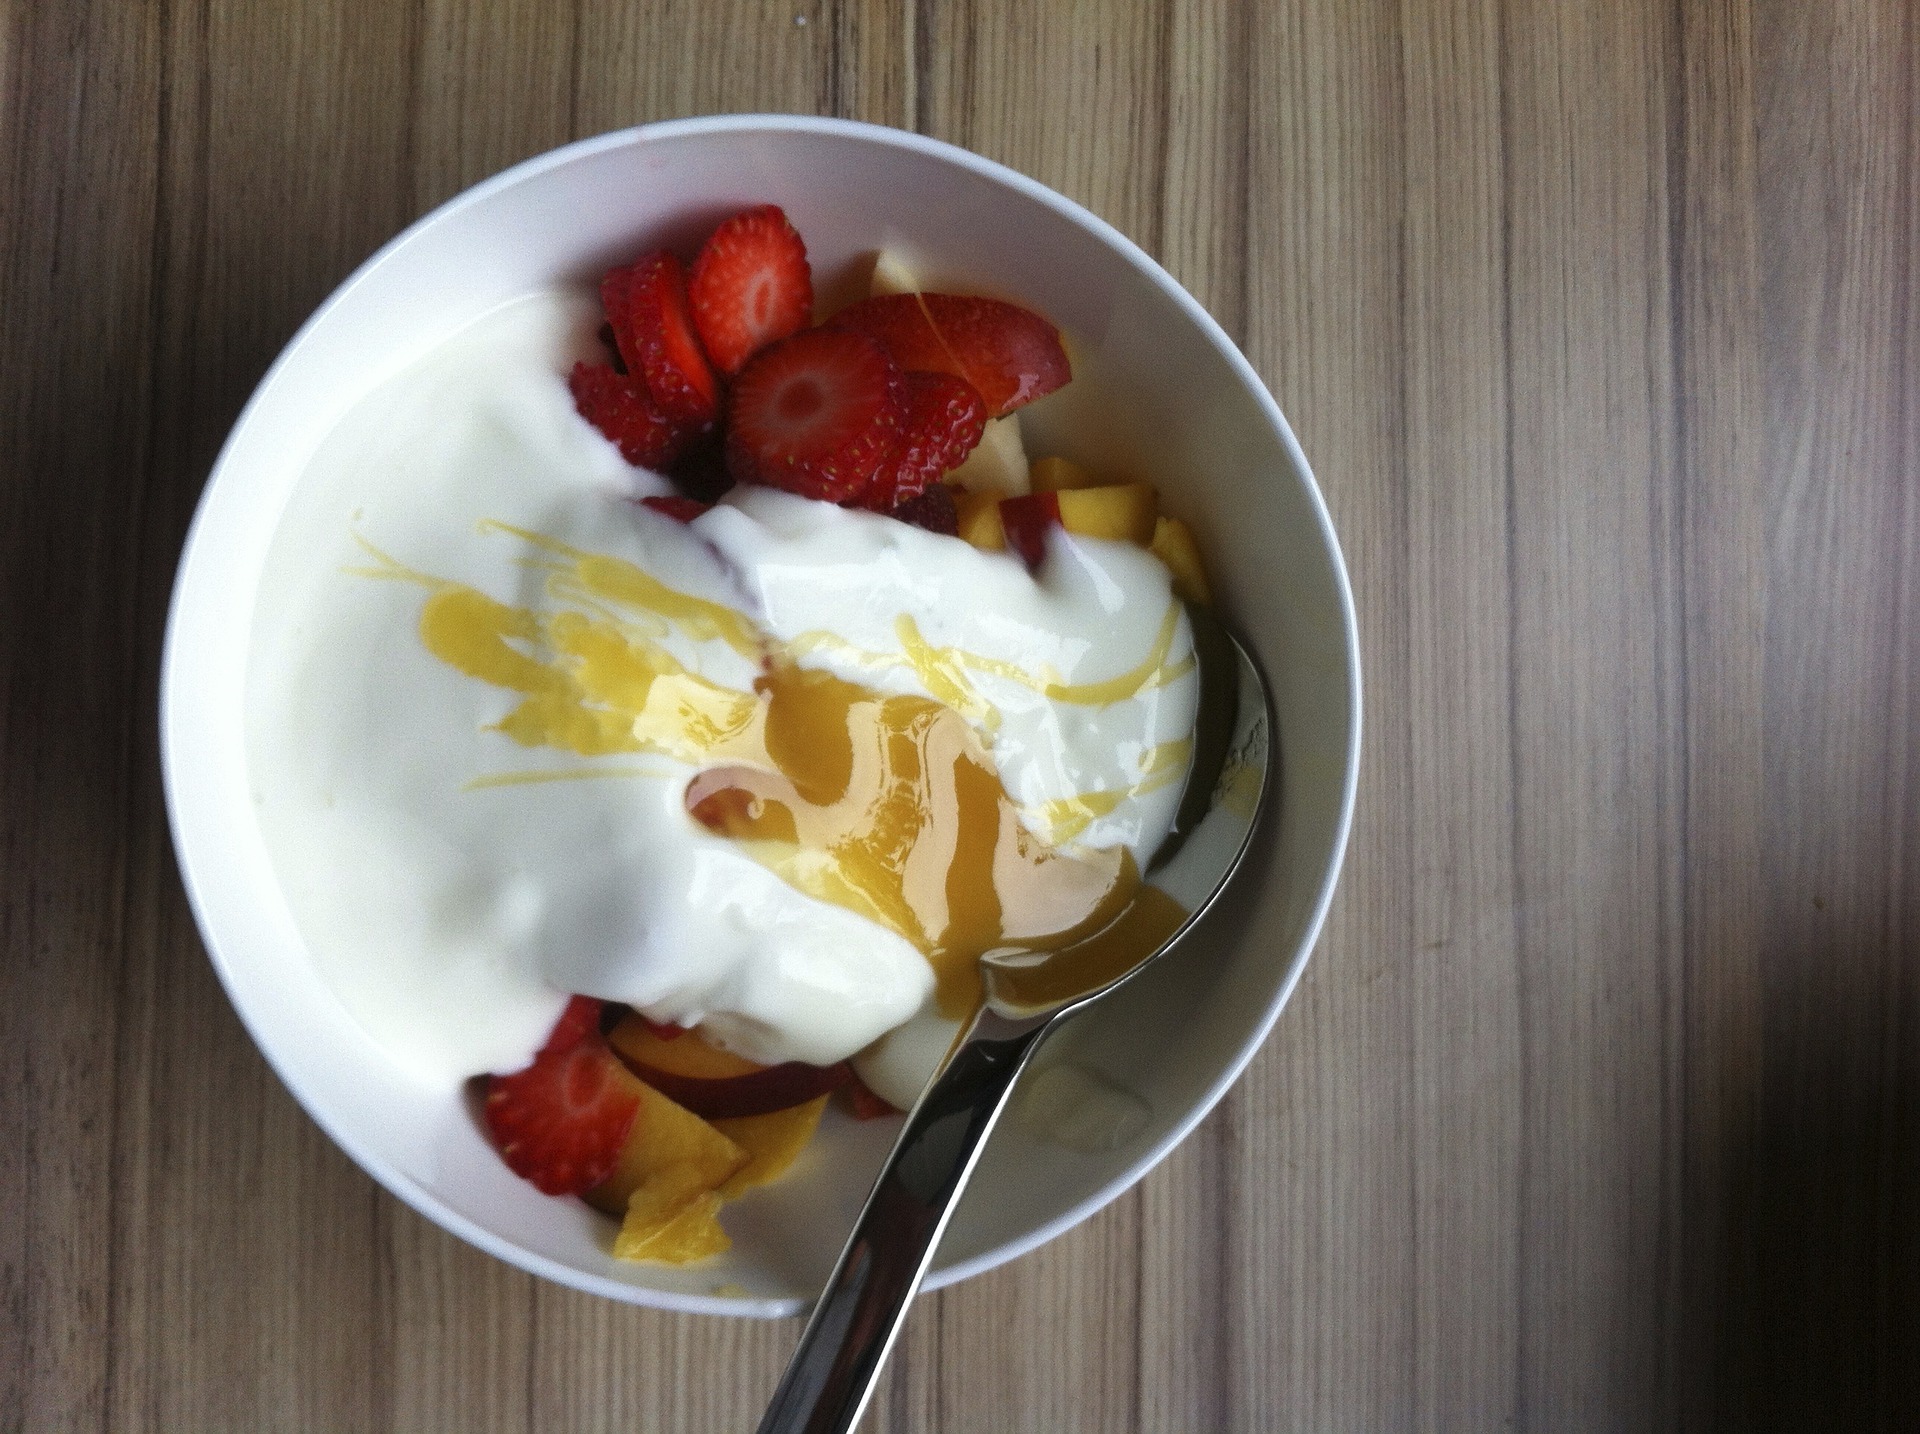 Řecký jogurt obsahuje až 8 gramů bílkovin na 100 g / foto: pixabay.com